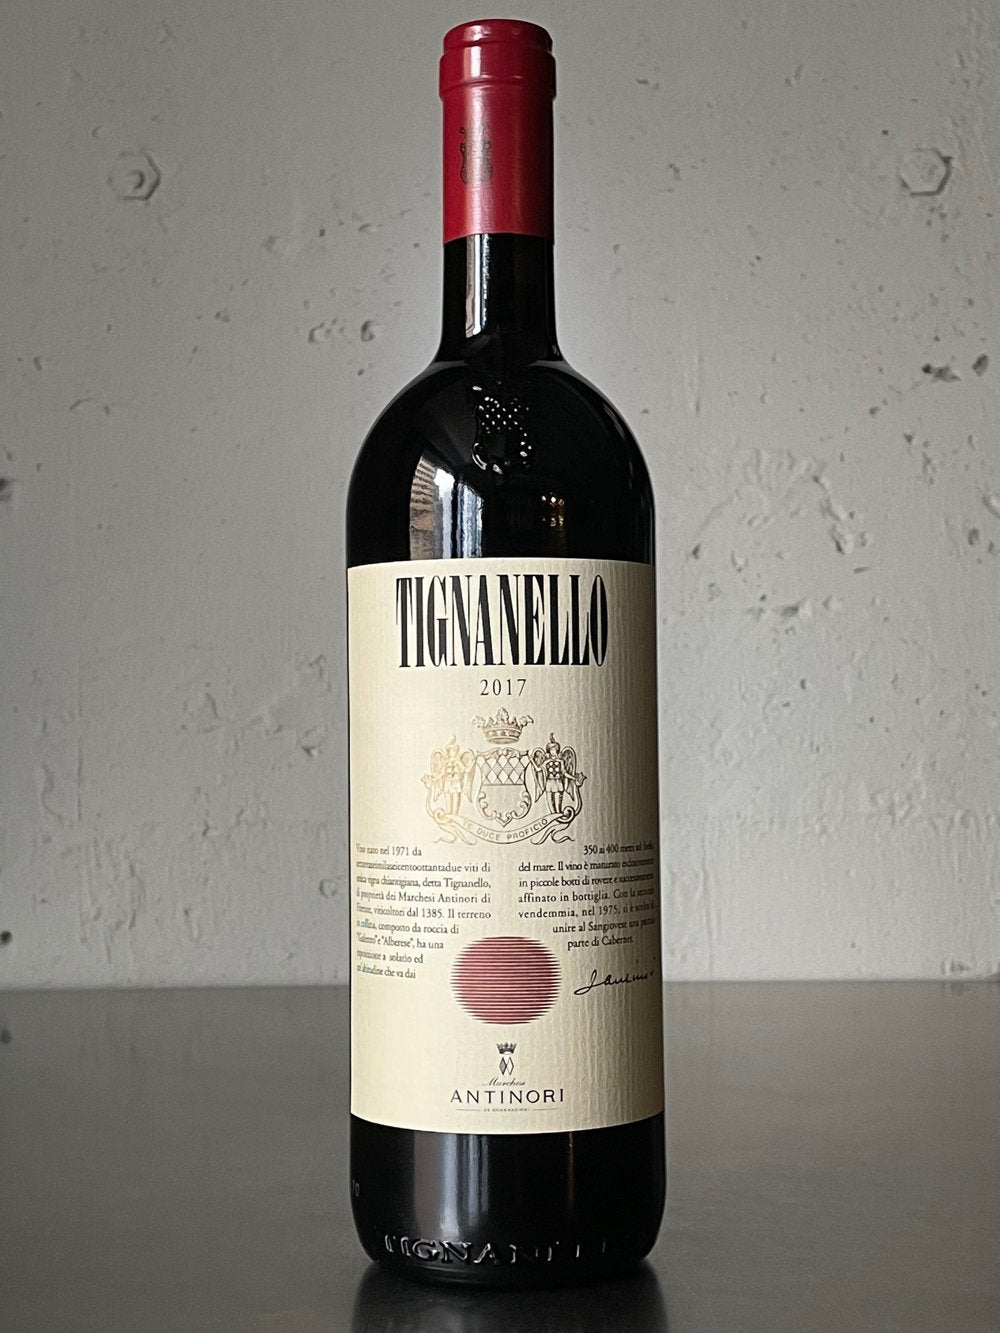 티냐넬로(Antinori Tignanello) 와인 2018 750ml <br><small>ティニャネロ 2018 赤 13.5度 スーパートスカーナ アンティノリ </small>